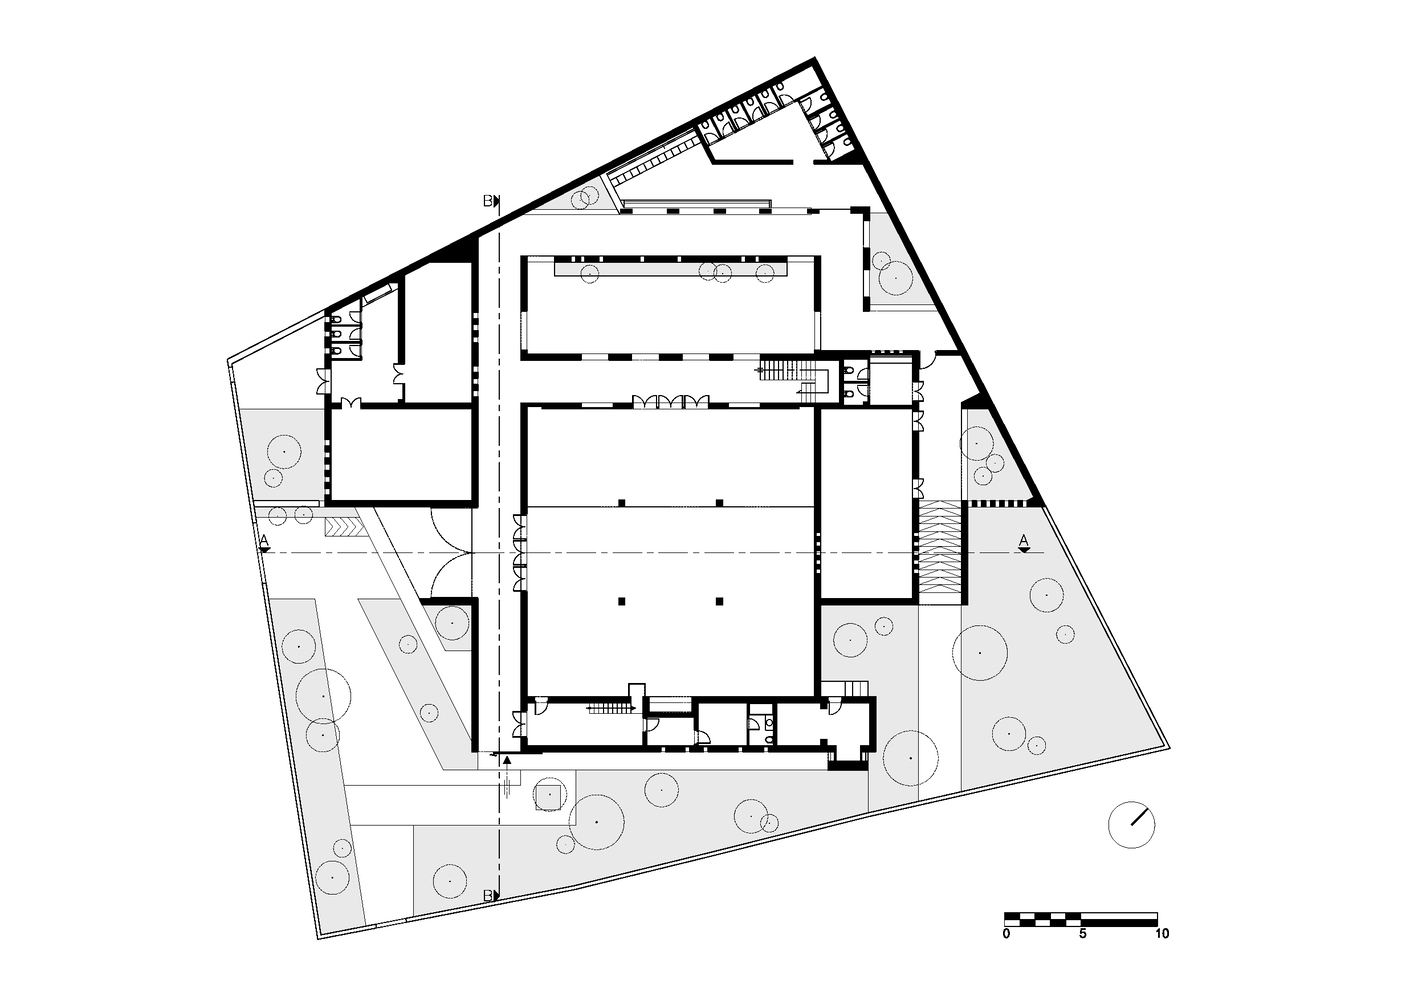 Plan du rez-de-chaussée de la mosquée Al-Tasamoh